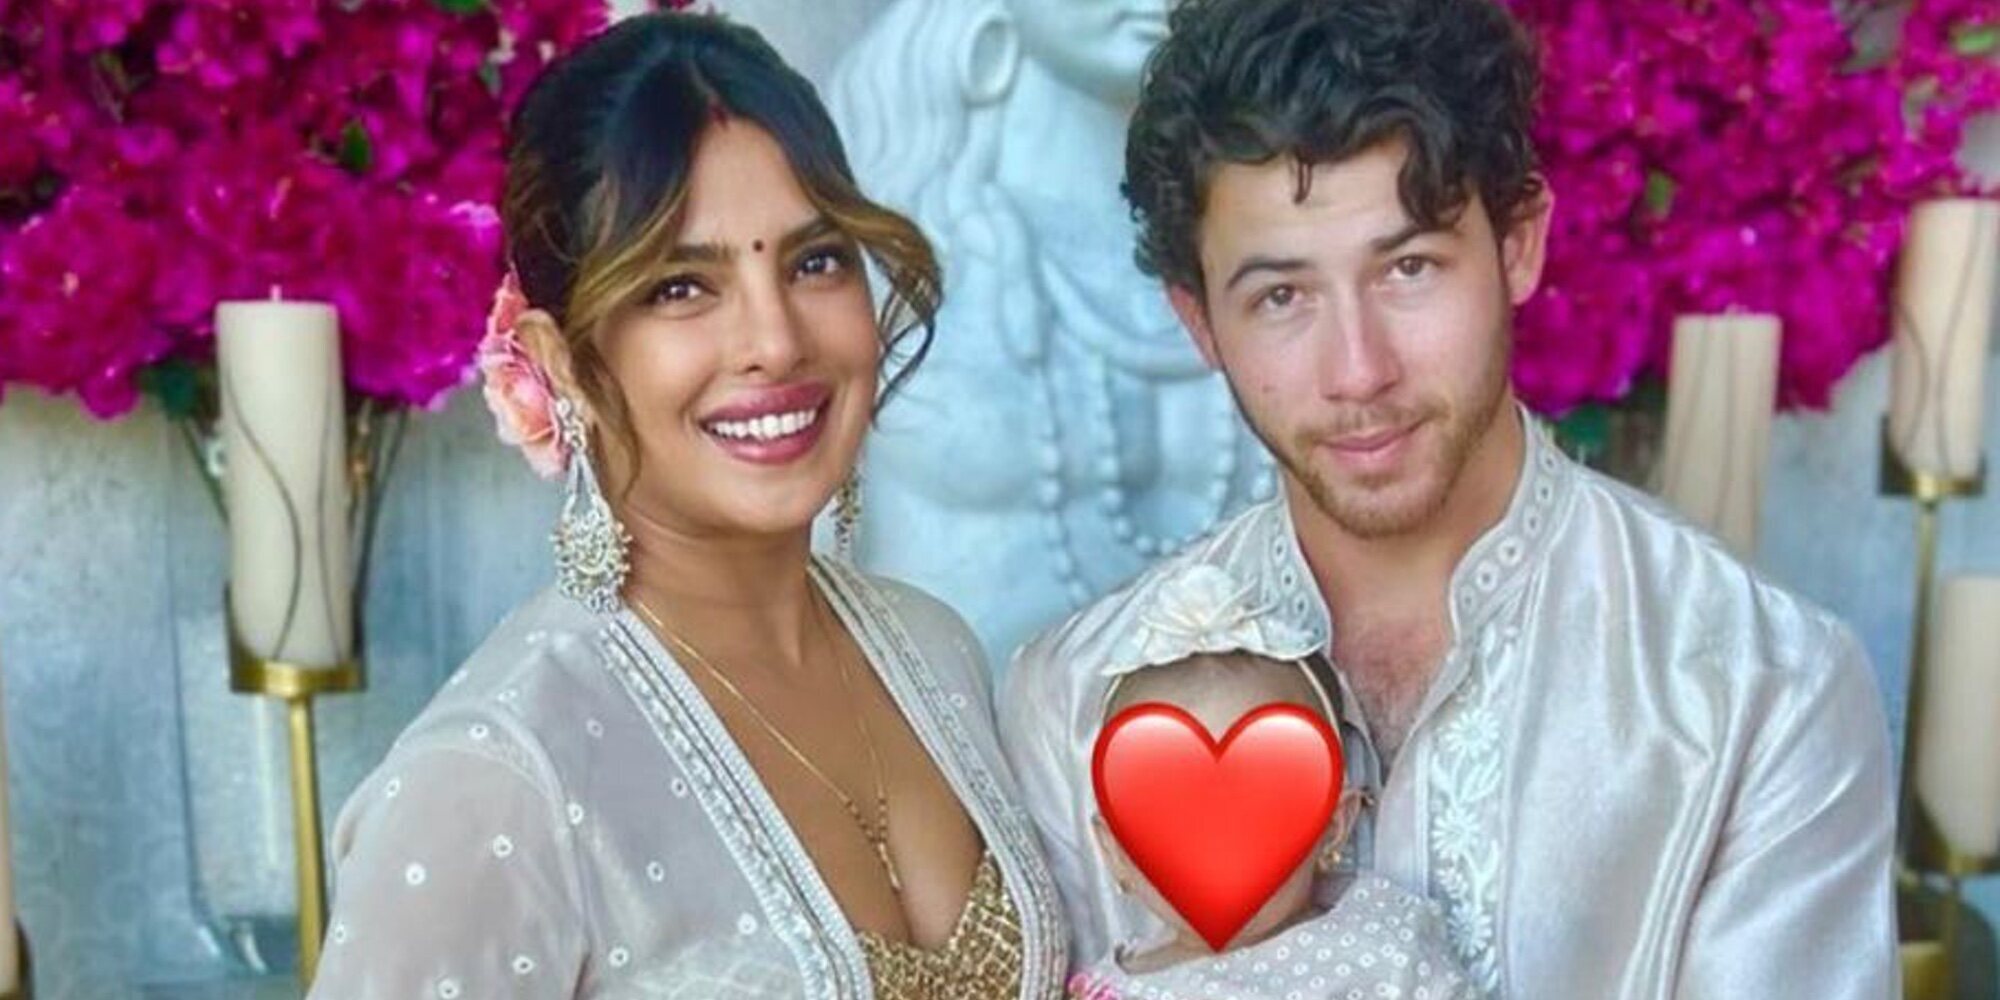 La bonita celebración tradicional India que han celebrado Nick Jonas y Priyanka Chopra por primera vez con Malti Marie